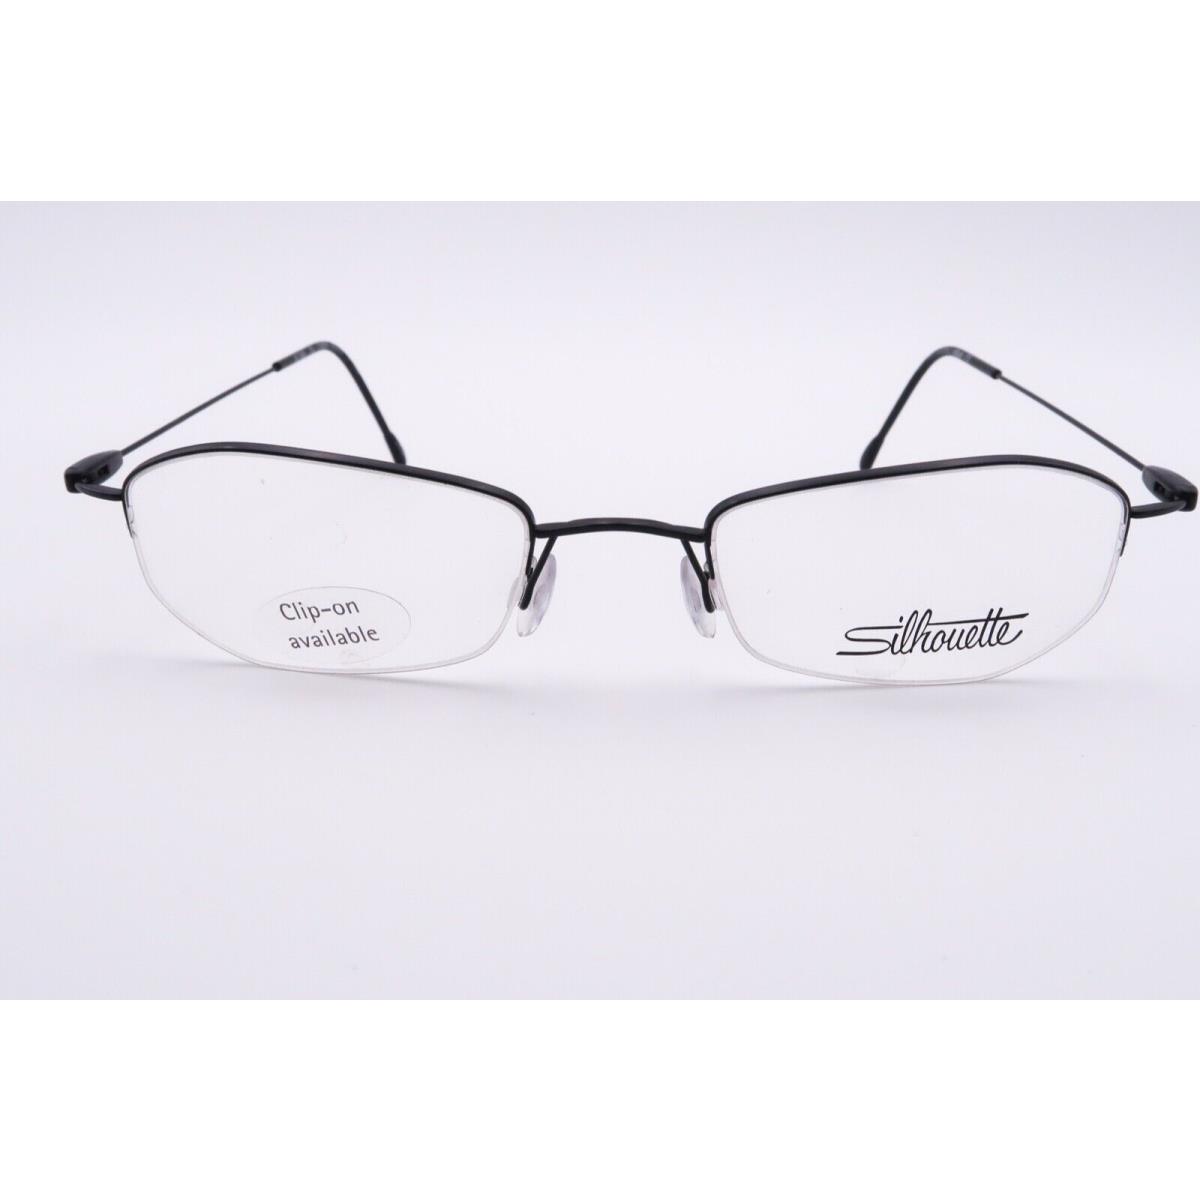 Silhouette eyeglasses  - Black Frame 0